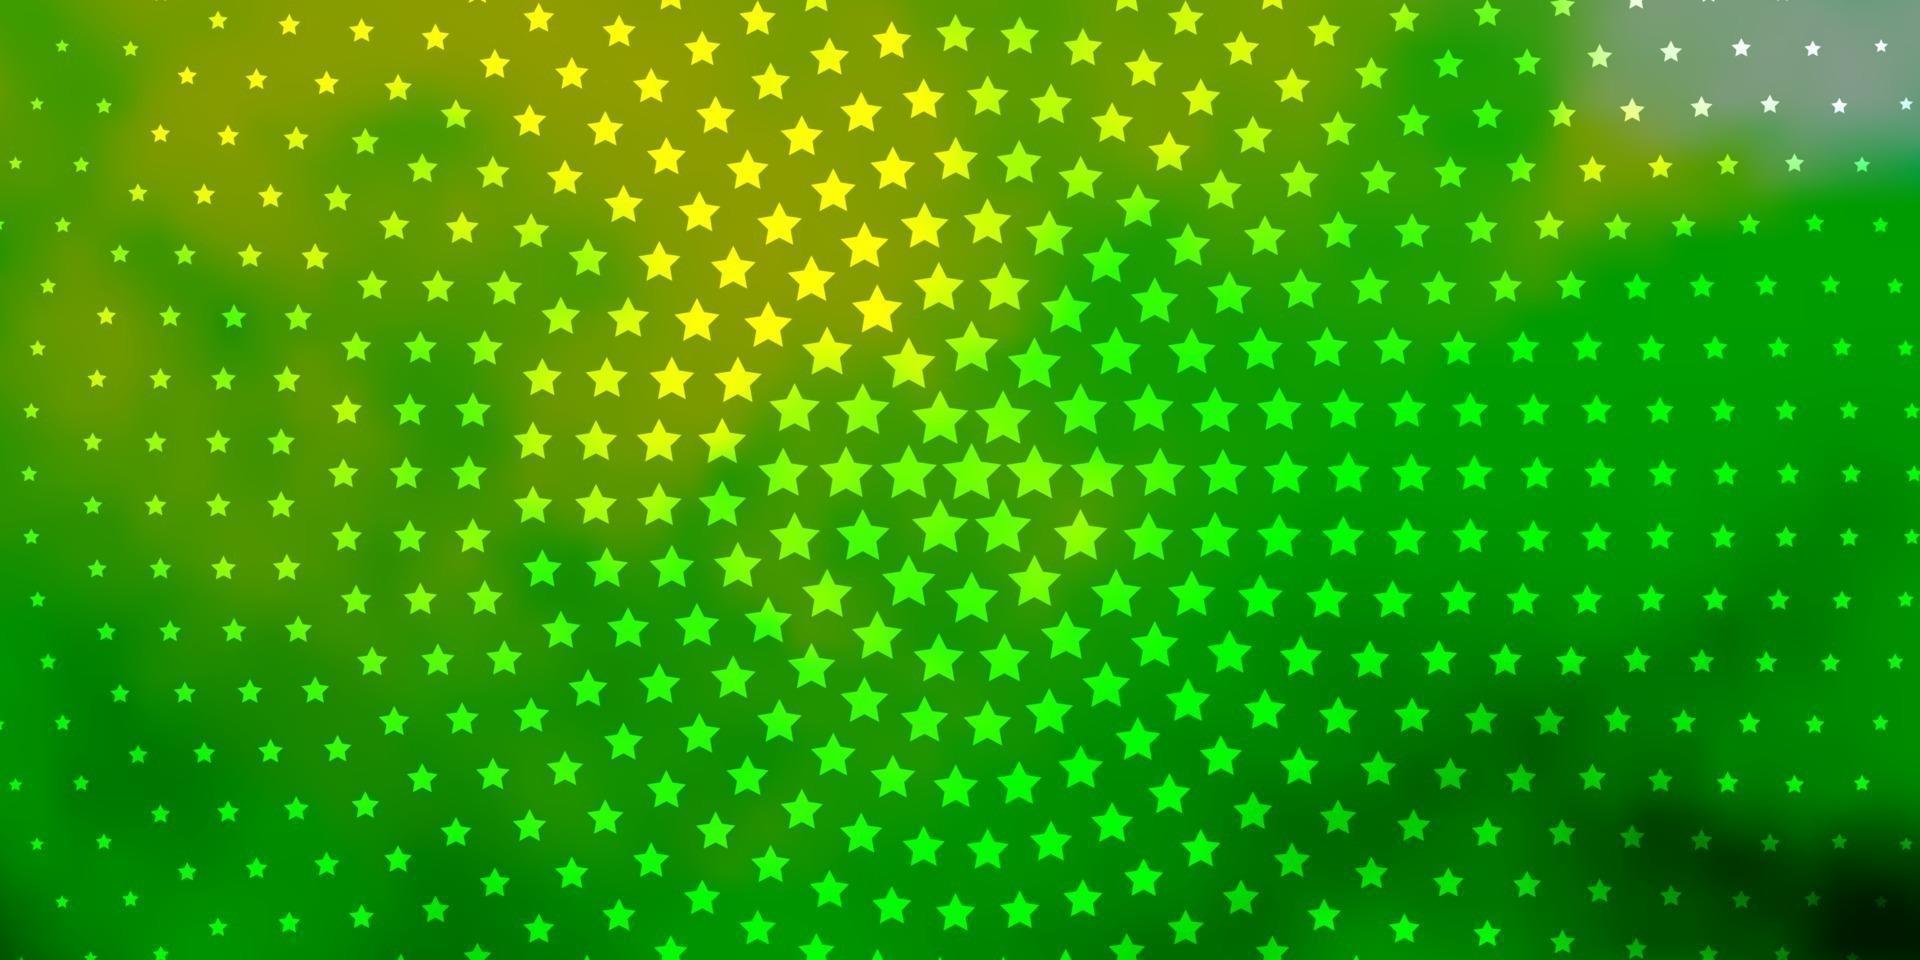 trama vettoriale verde chiaro, giallo con bellissime stelle.